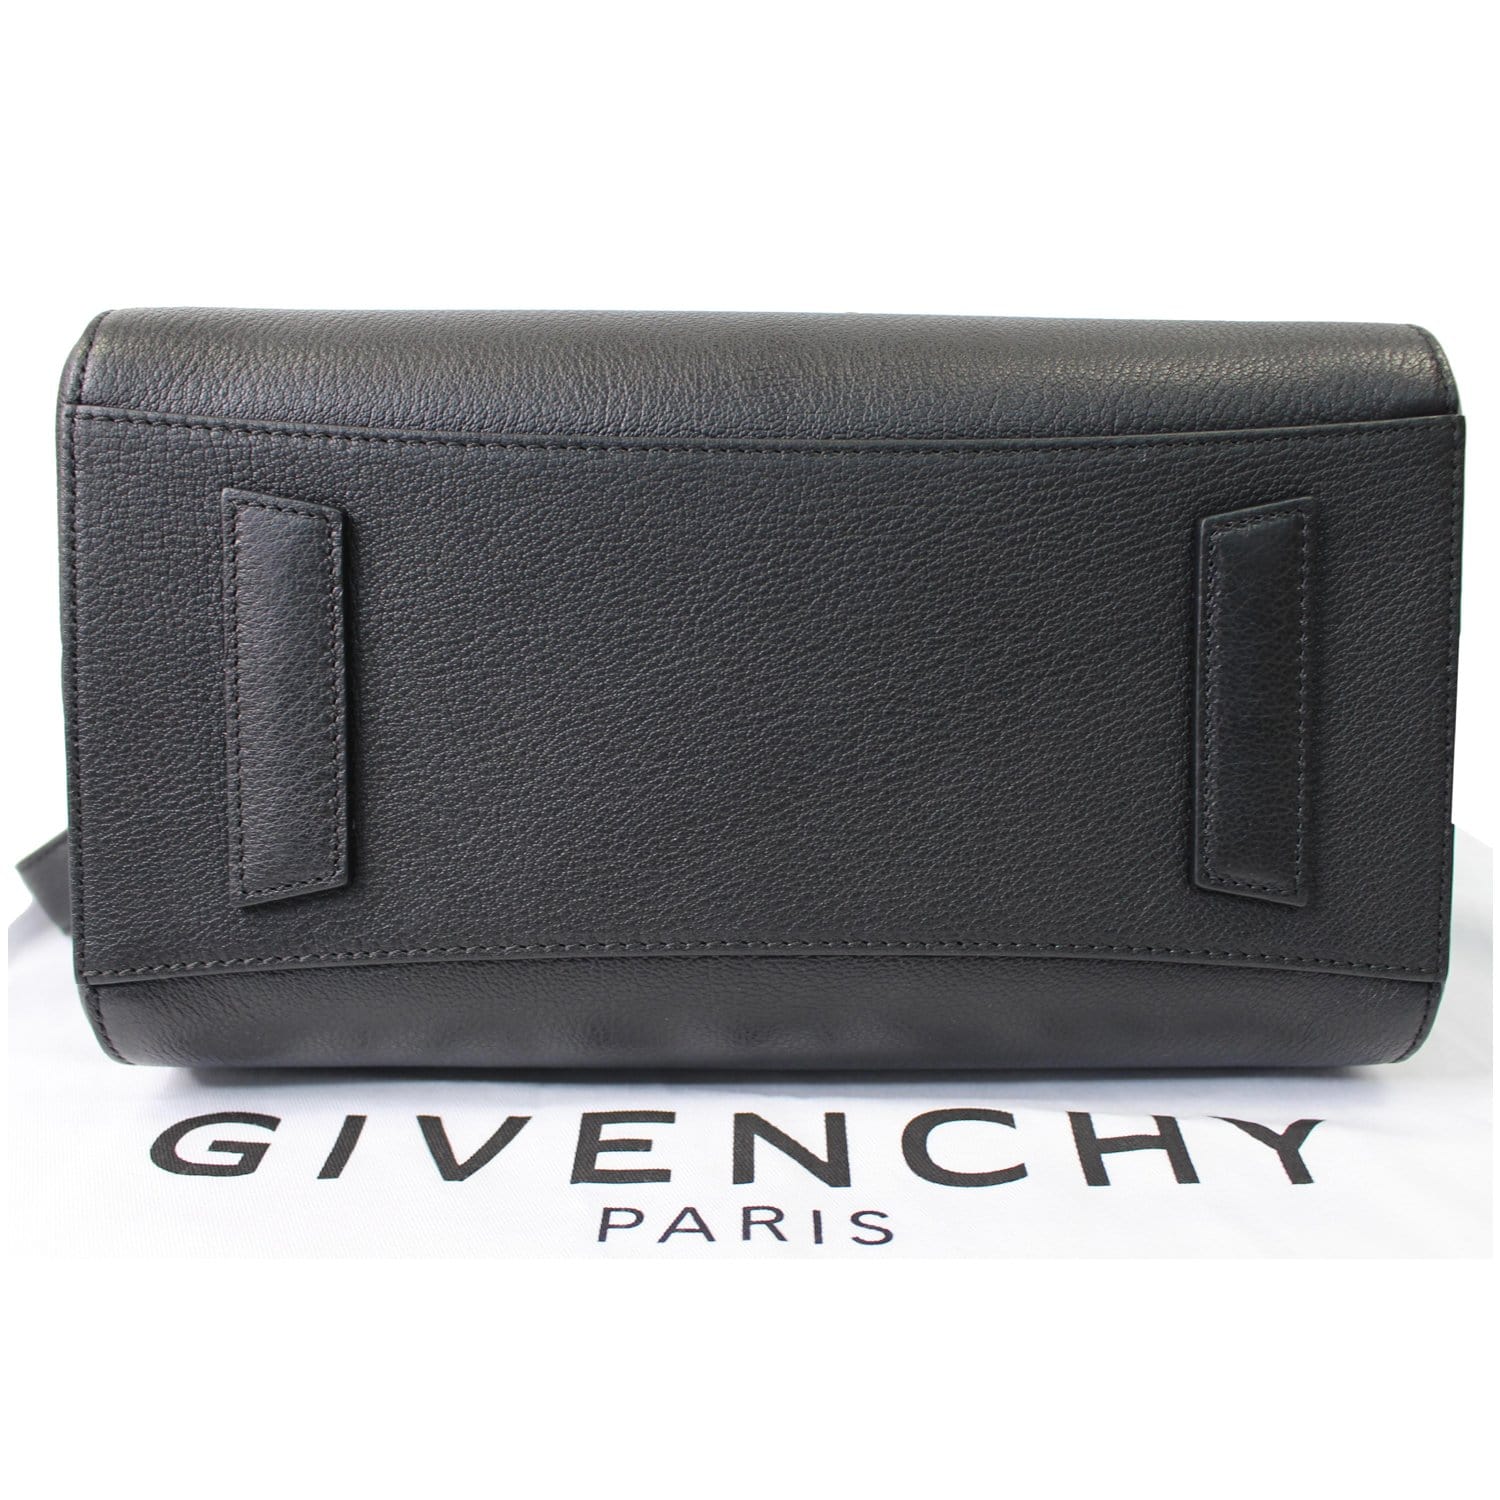 Givenchy Antigona Leather Handle Bag - Black Handle Bags, Handbags -  GIV180269